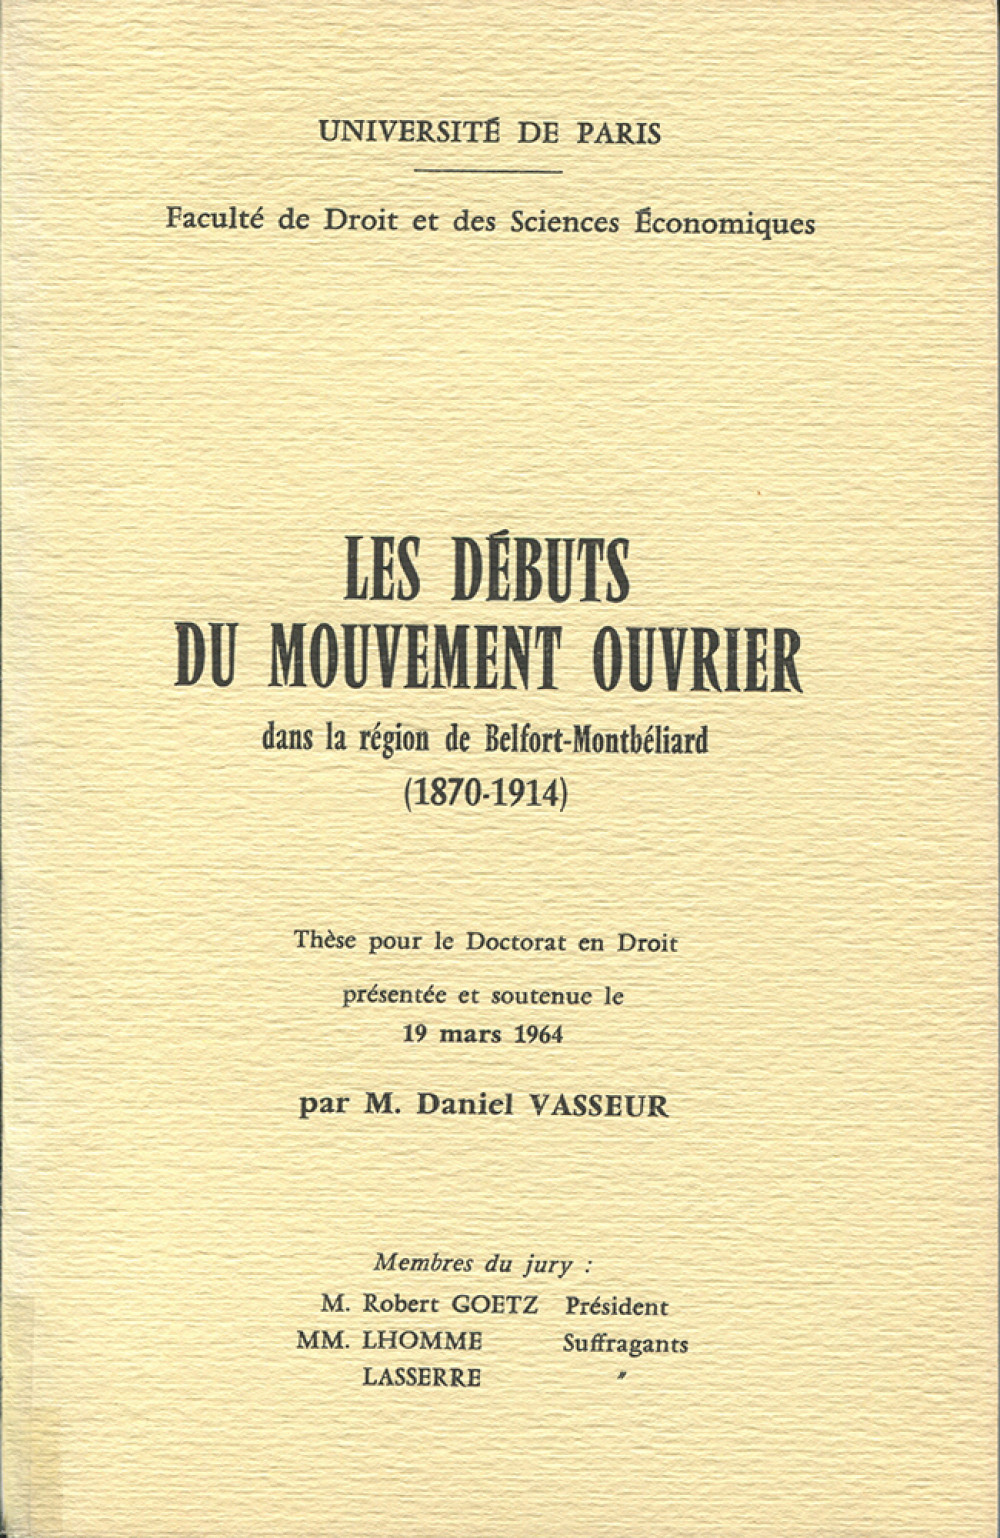 Les débuts du mouvement ouvrier dans la région Belfort-Montbéliard (1870-1914)